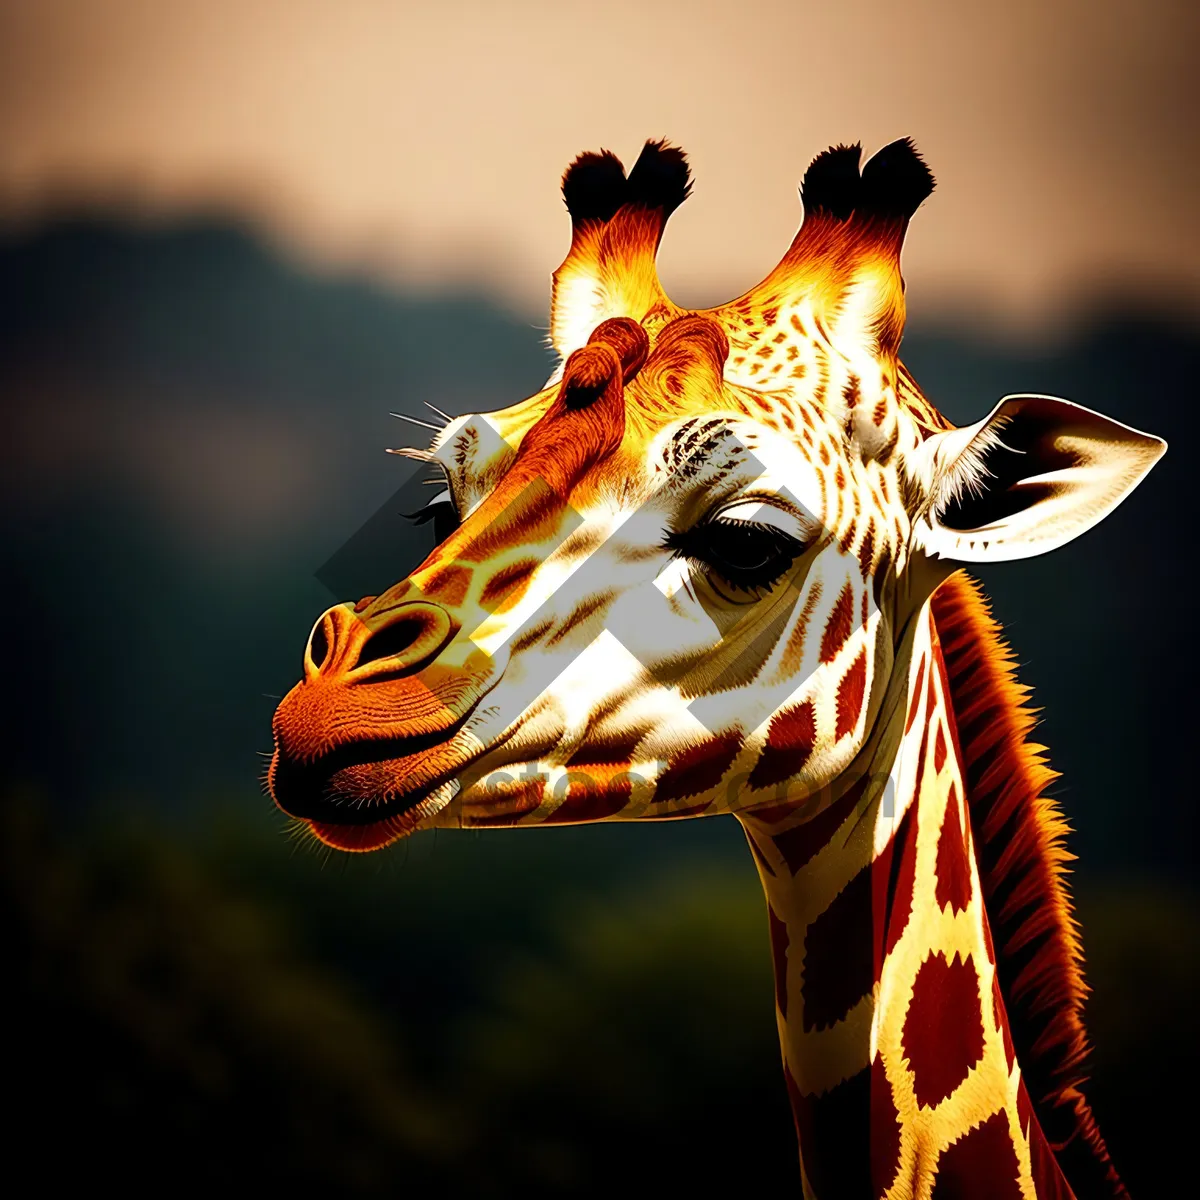 Picture of Wildlife Safari: Majestic Giraffe in the Wilderness